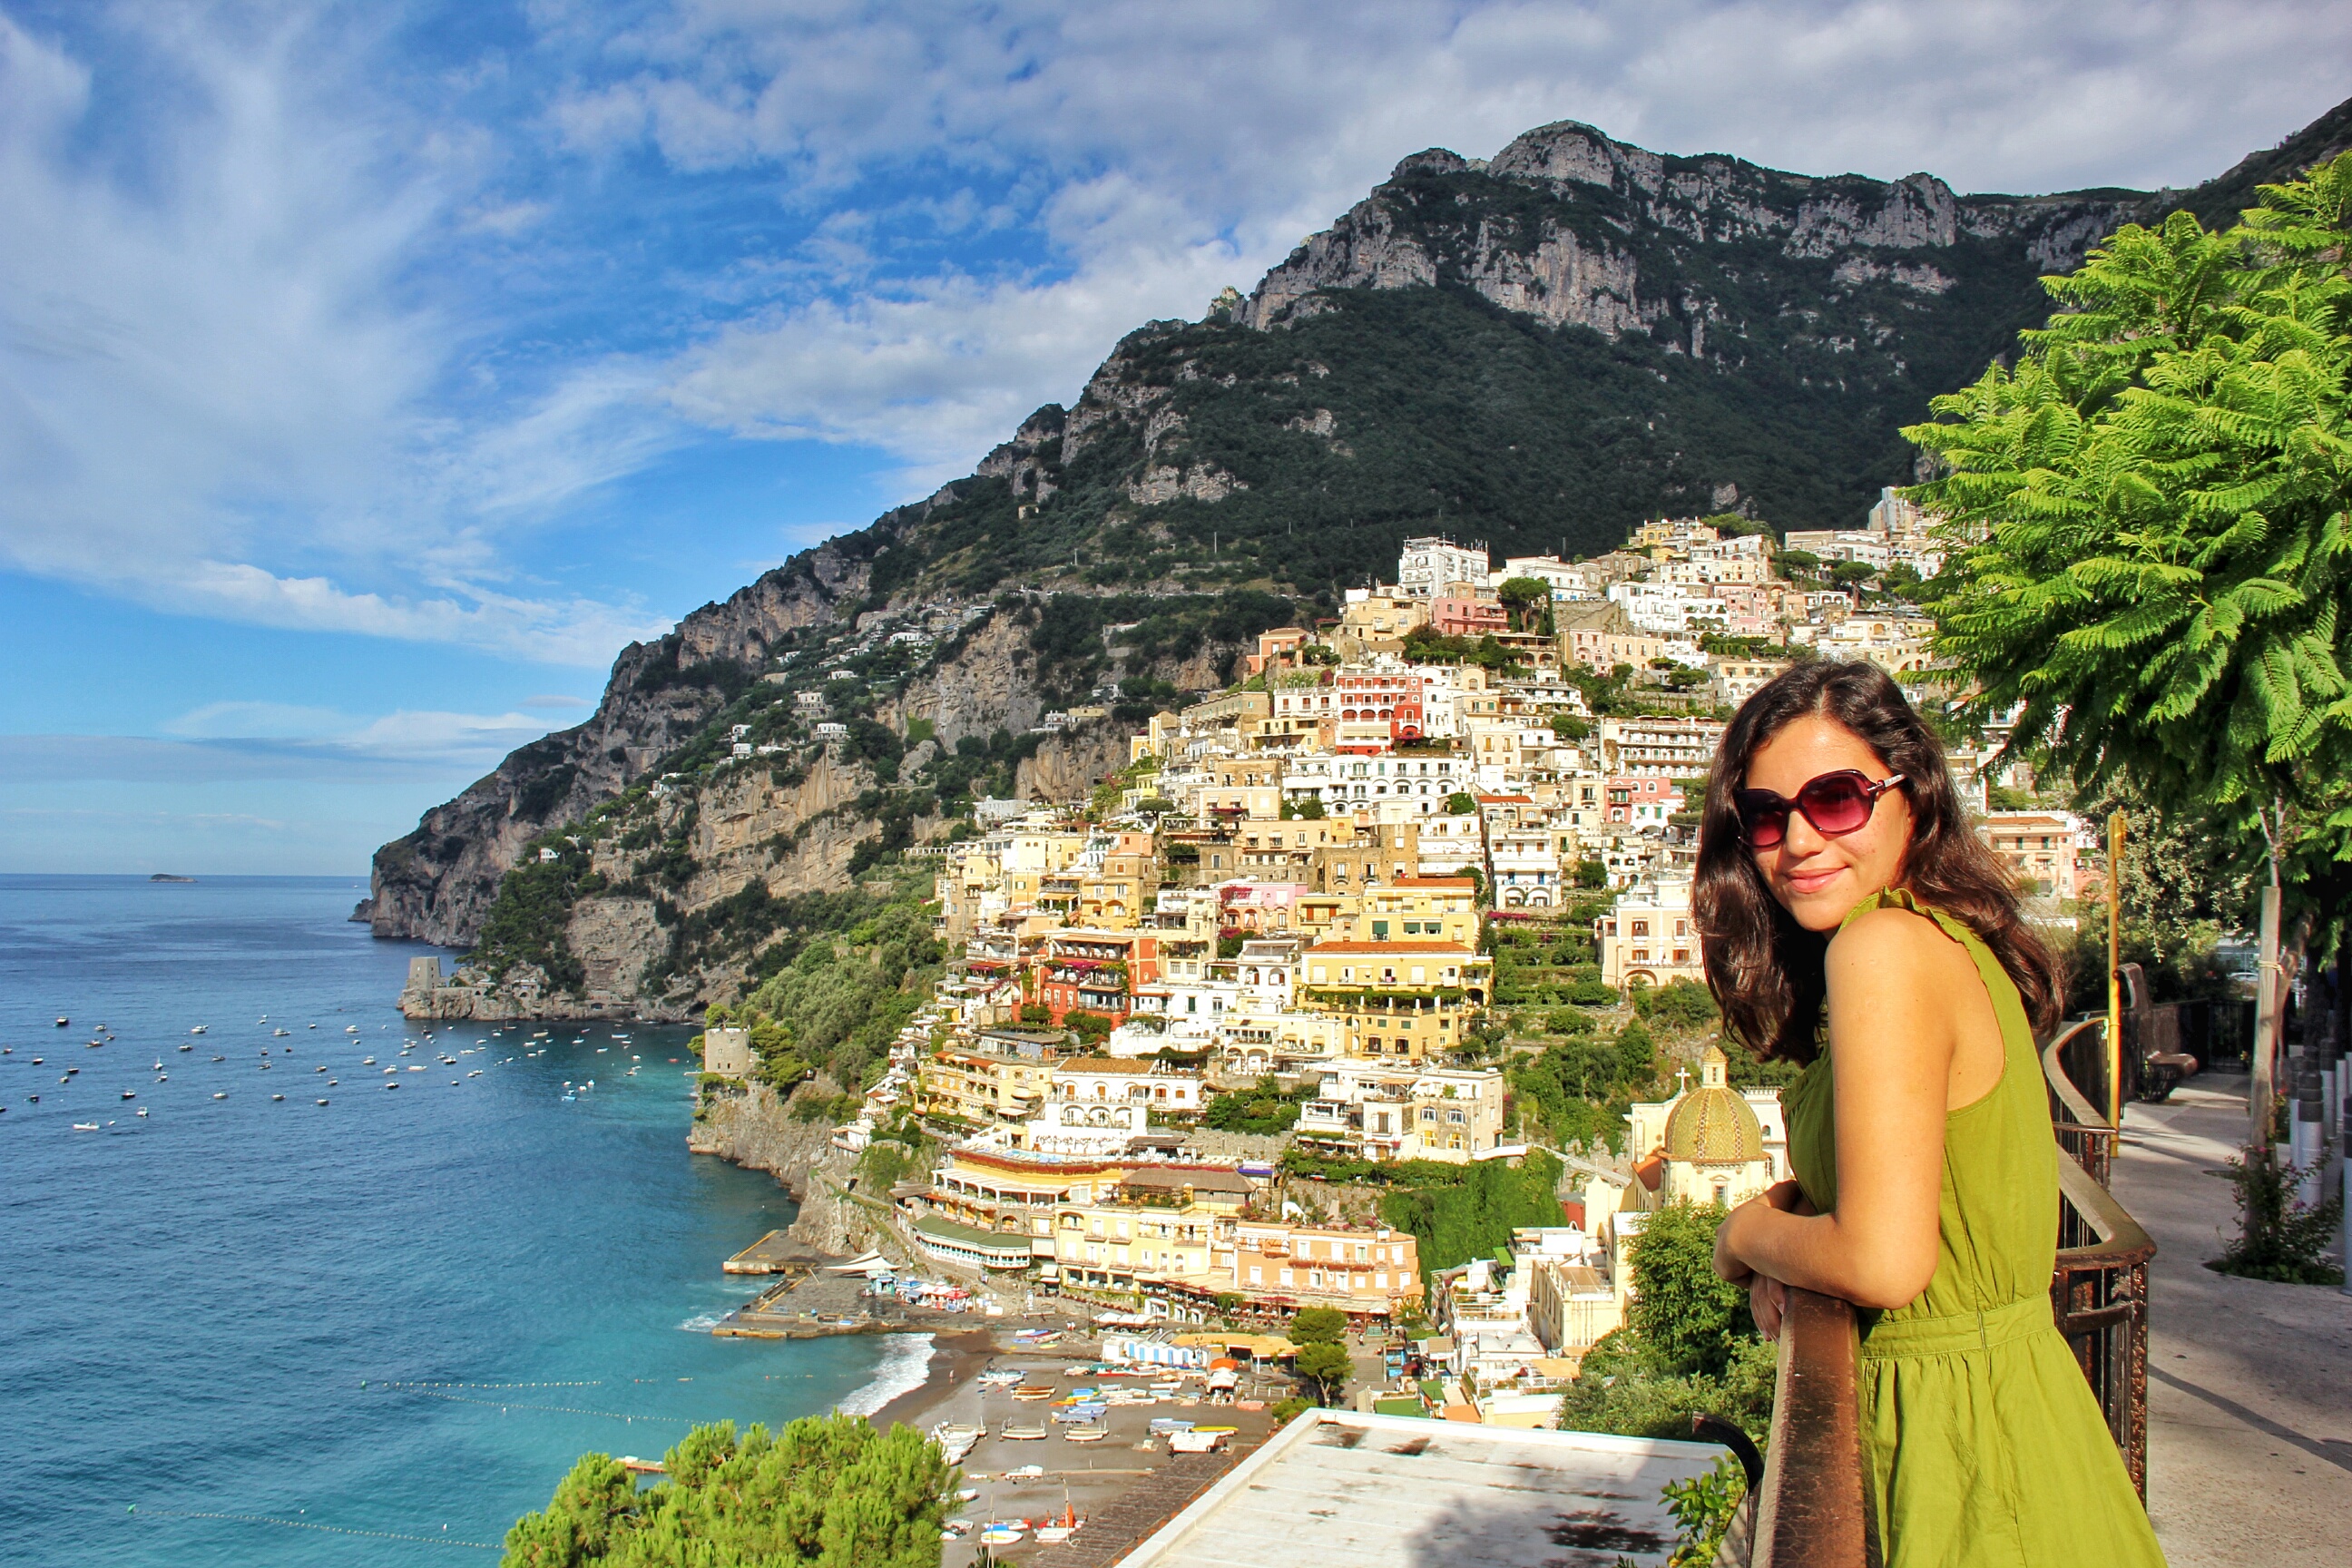 Positano belki de İtalya güneyindeki en güzel yer